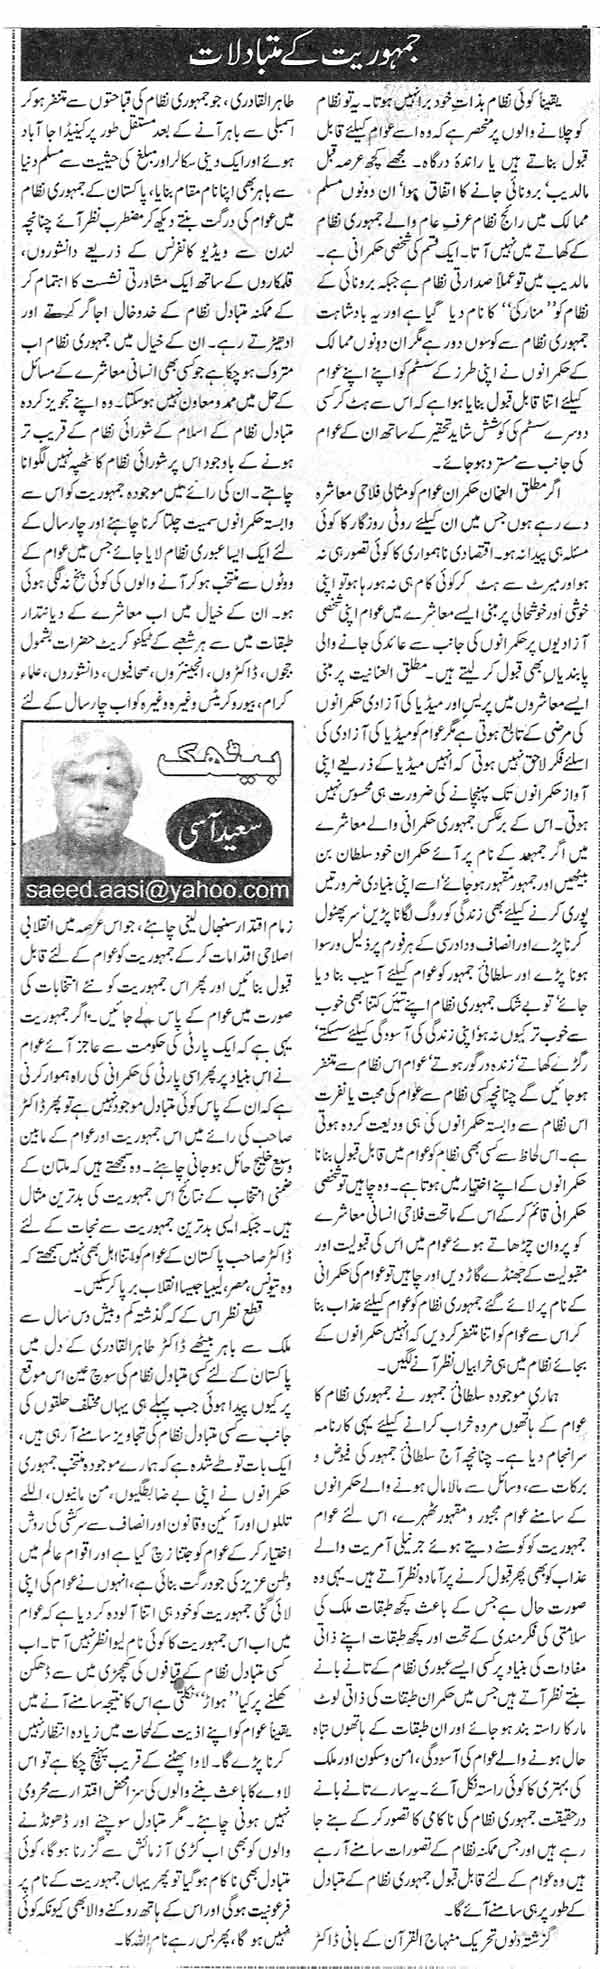 Minhaj-ul-Quran  Print Media Coverage Daily Nawa-i-Waqt page 2 